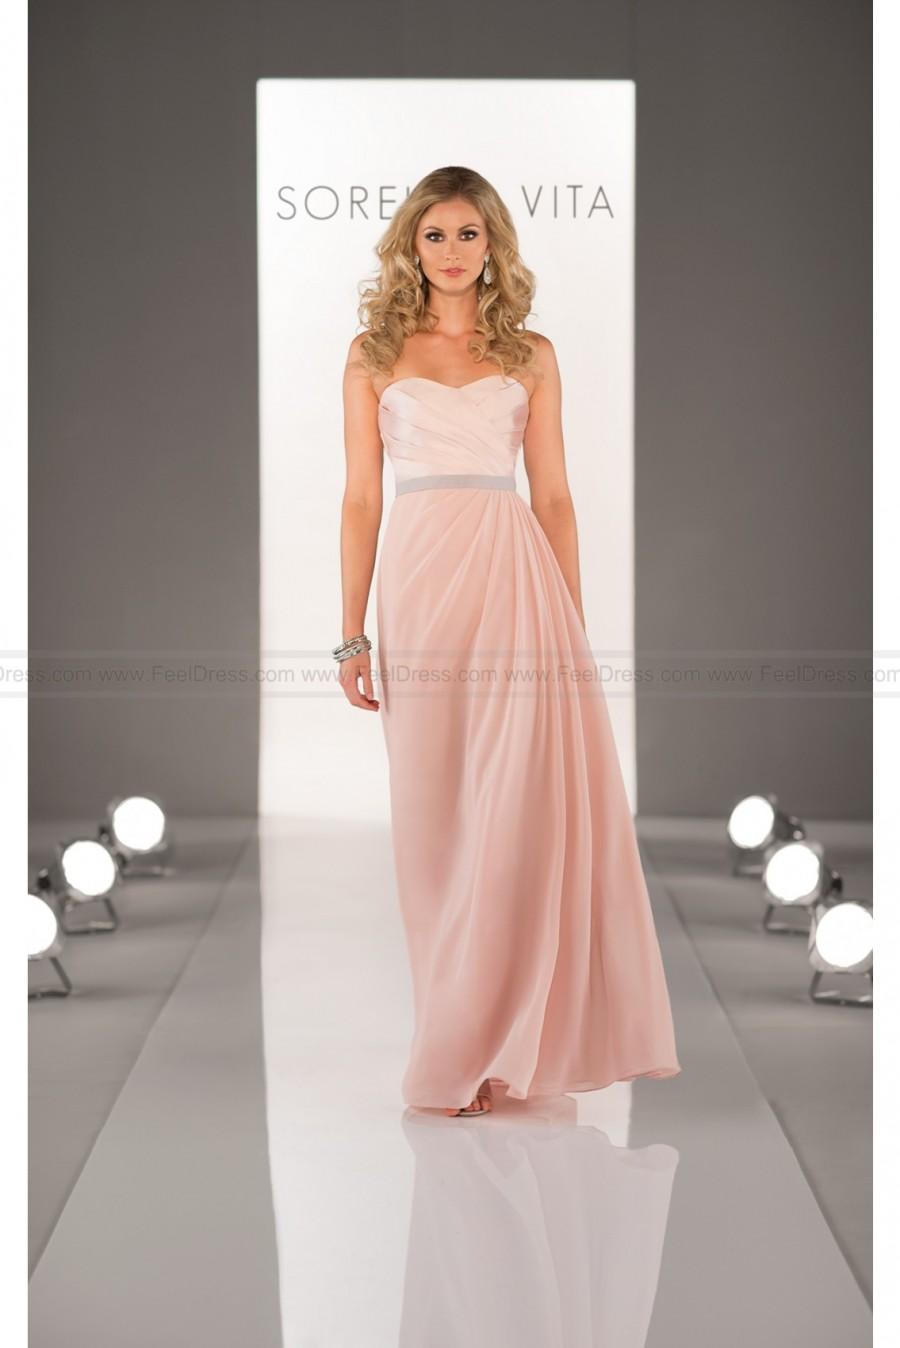 زفاف - Sorella Vita Cute Bridesmaid Dress Style 8424